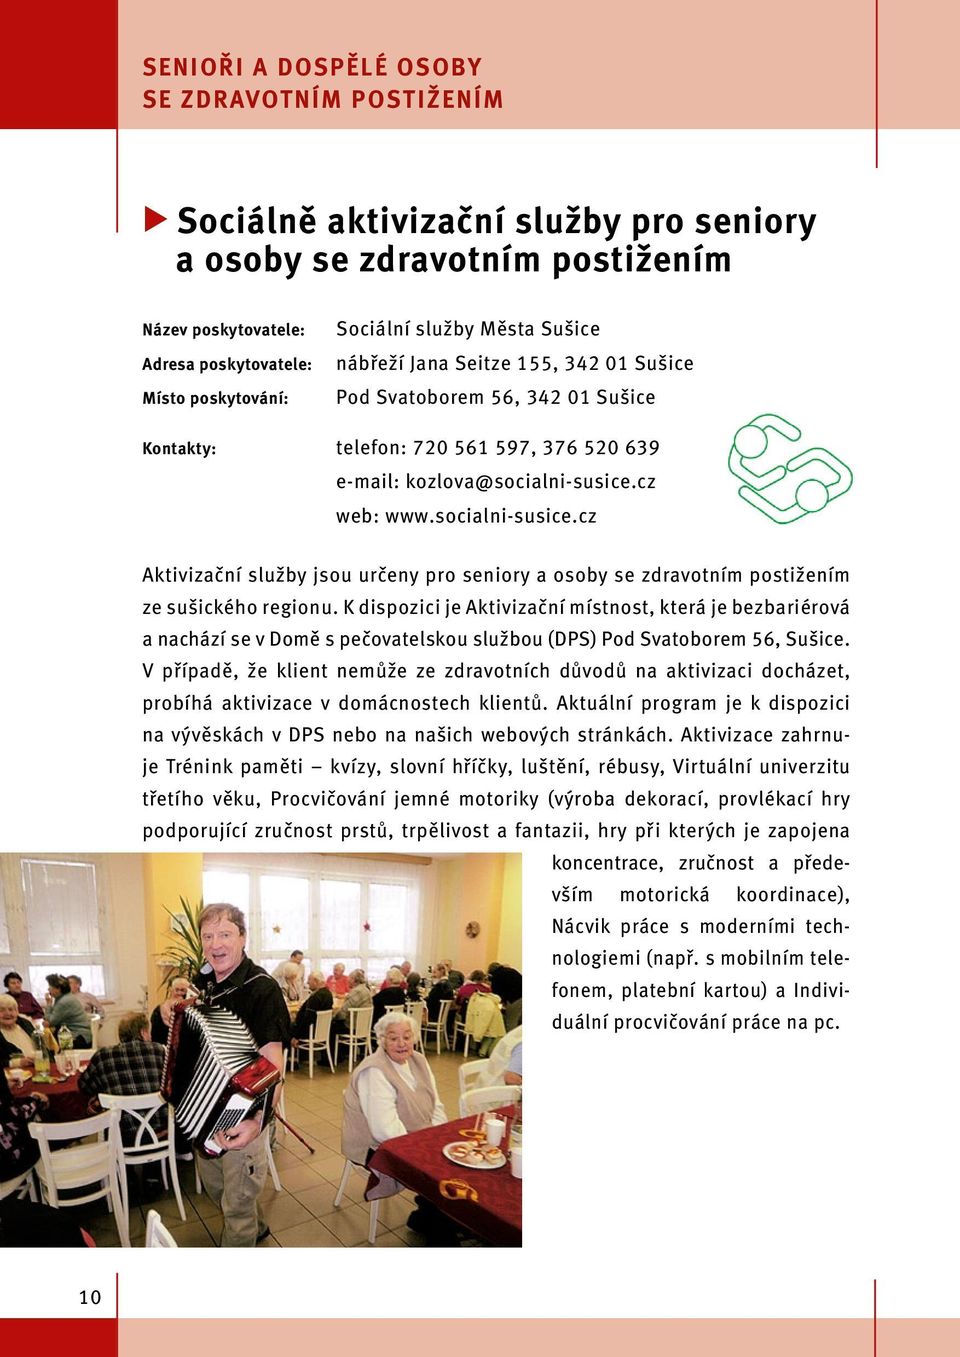 cz web: www.socialni-susice.cz Aktivizační služby jsou určeny pro seniory a osoby se zdravotním postižením ze sušického regionu.